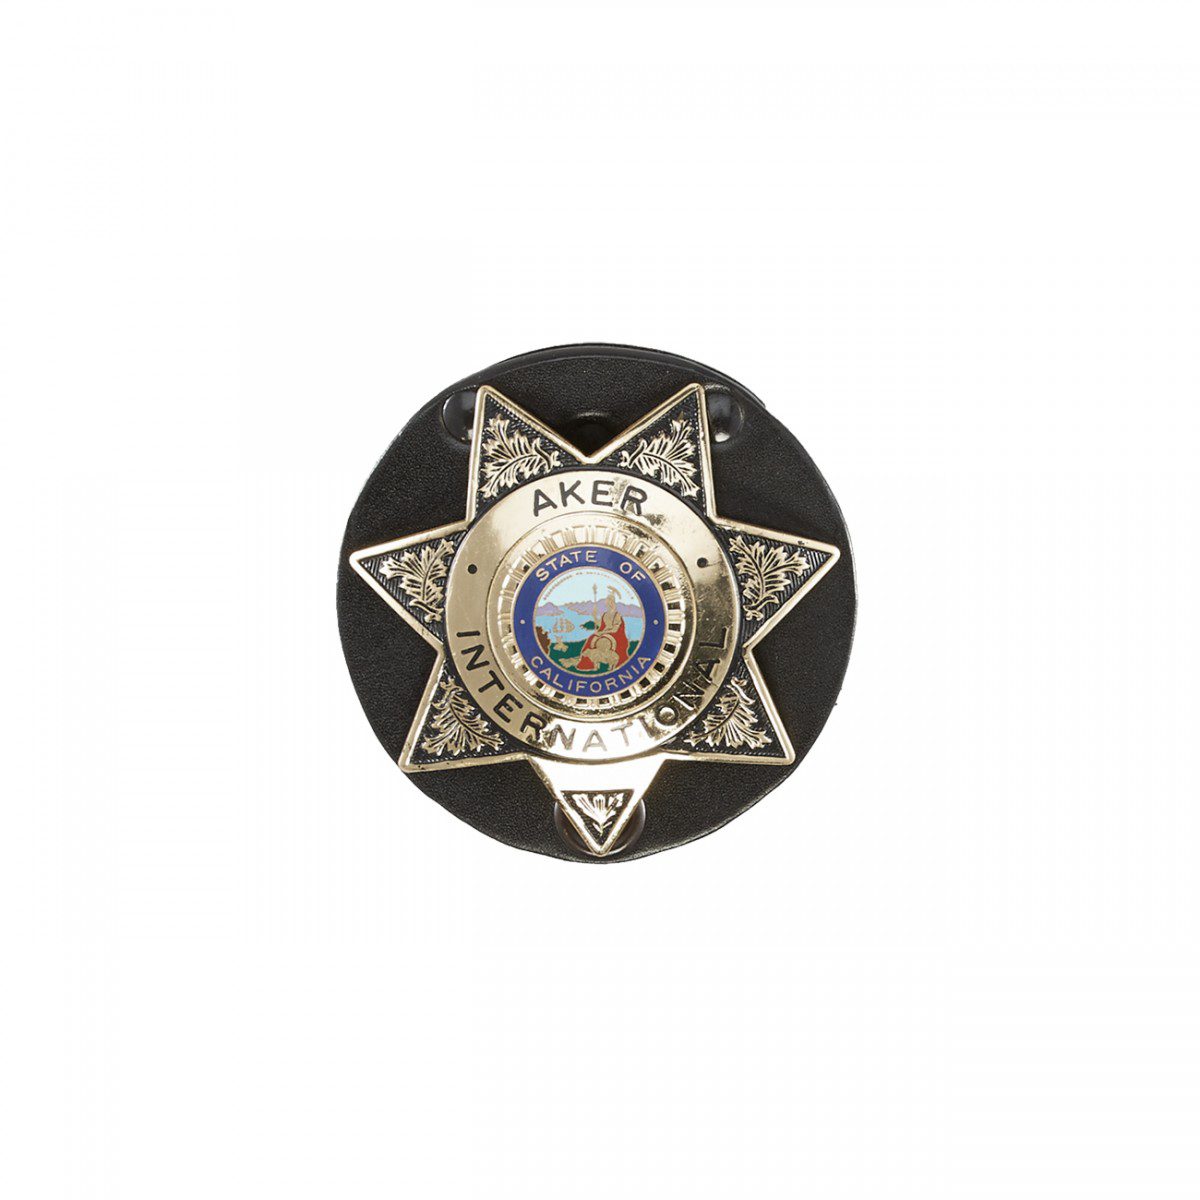 Aker Leather Star Badge Holder 592 - Newest Arrivals